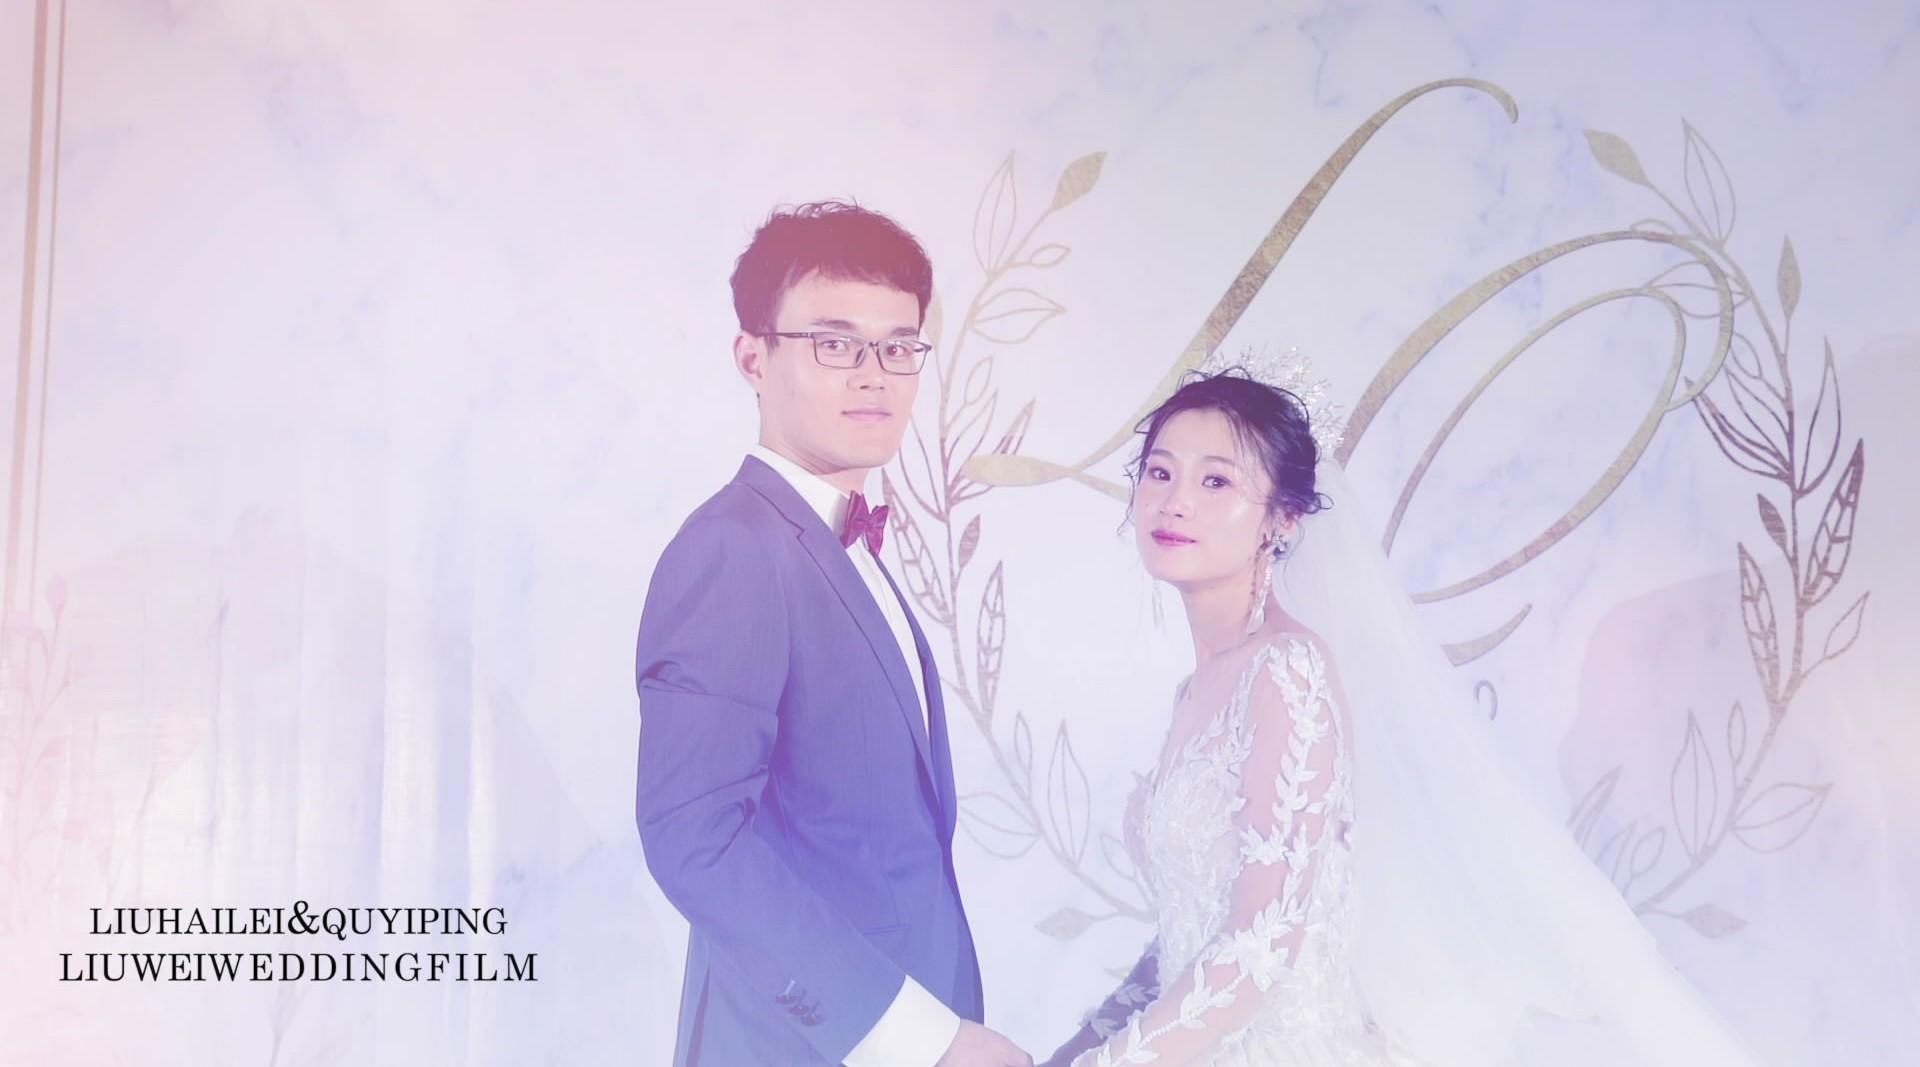 刘伟婚庆-LIU&QU·WEDDING FILM.mp4